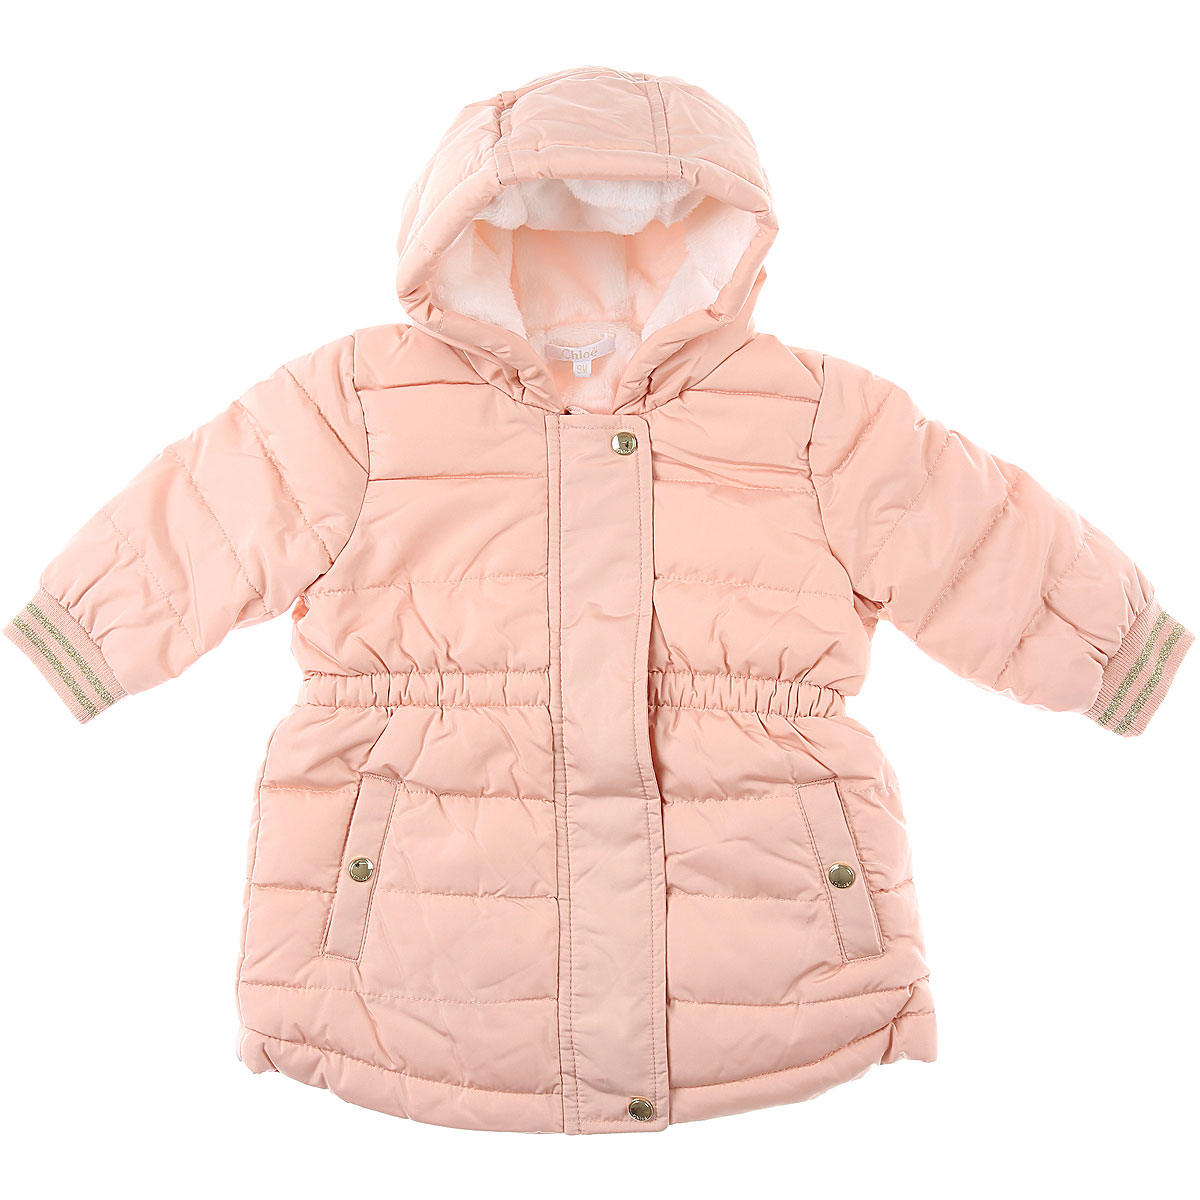 Chloe Baby Daunen Jacke für Mädchen Günstig im Sale, Pink Aprikose, Polyester, 2017, 12M 18M 2Y 9M